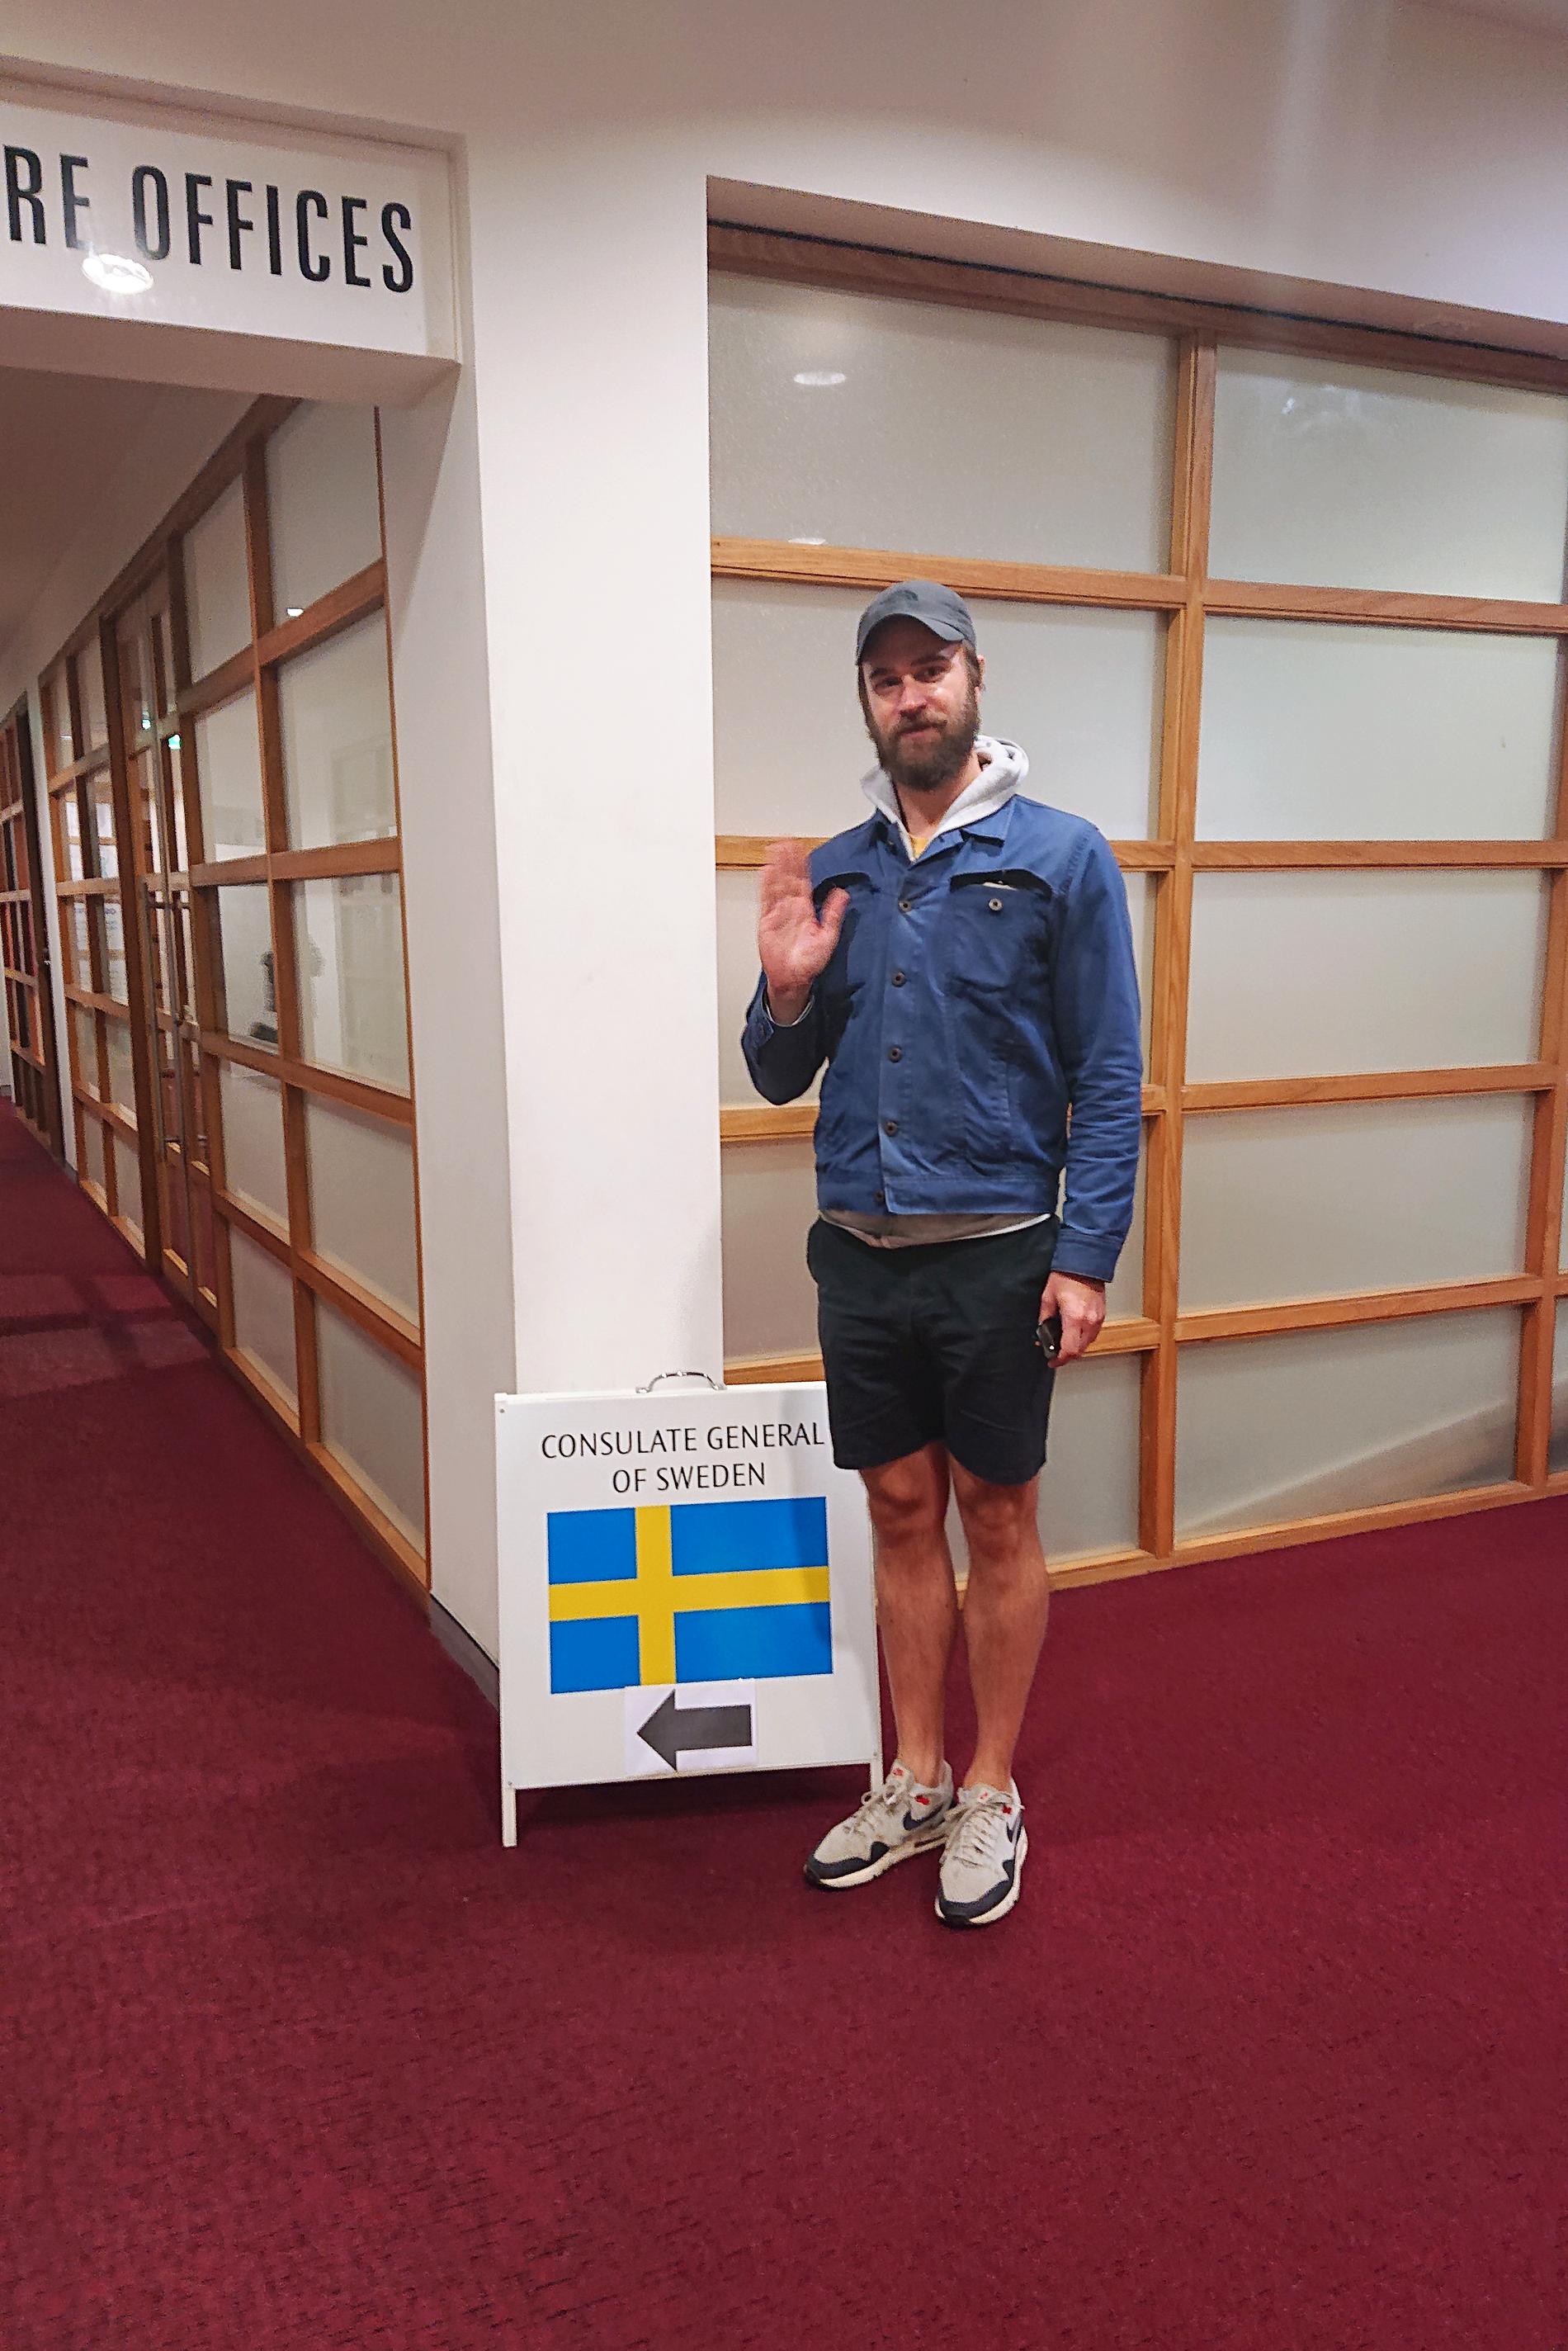 Förtidsröstningen inför riksdagsvalet inleds i dag utomlands. Här ska Johan Sundberg rösta på Svenska konsulatet i Sydney.